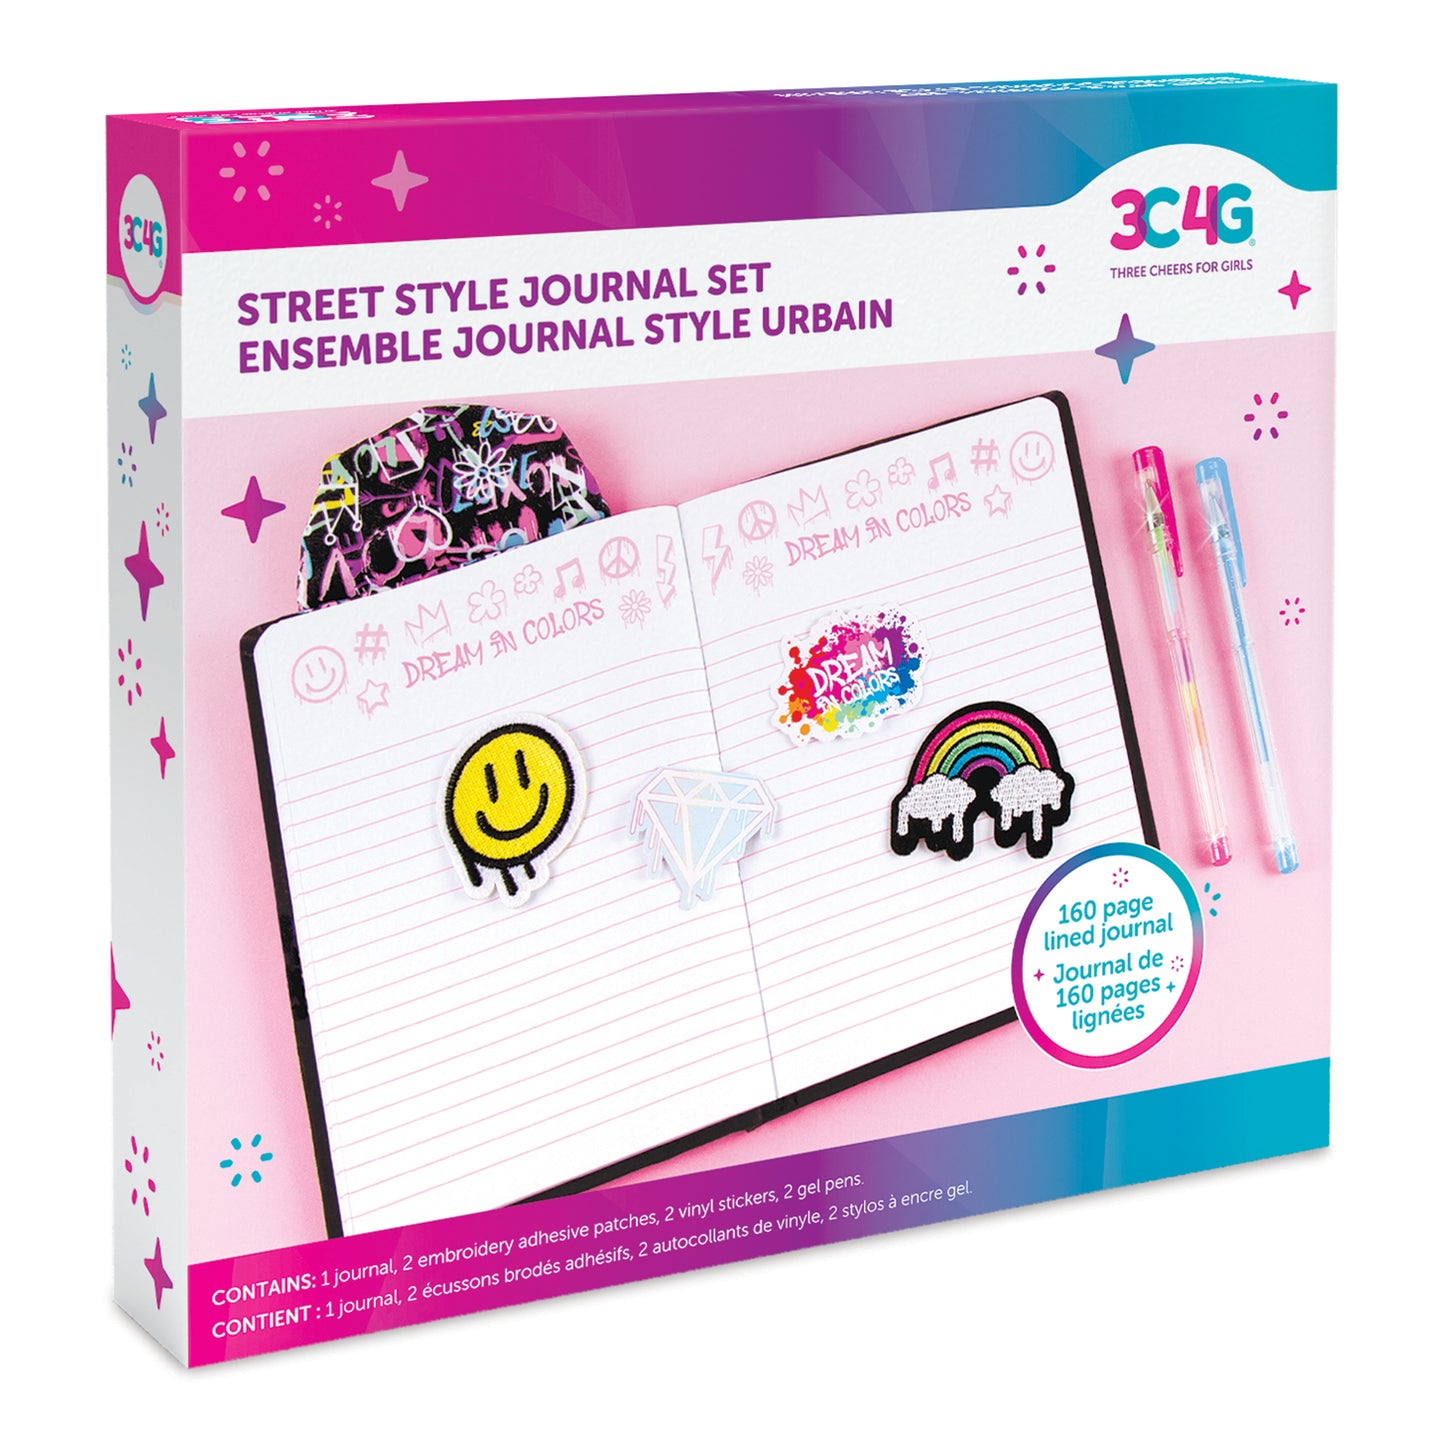 Graffiti Street Style Journal Set